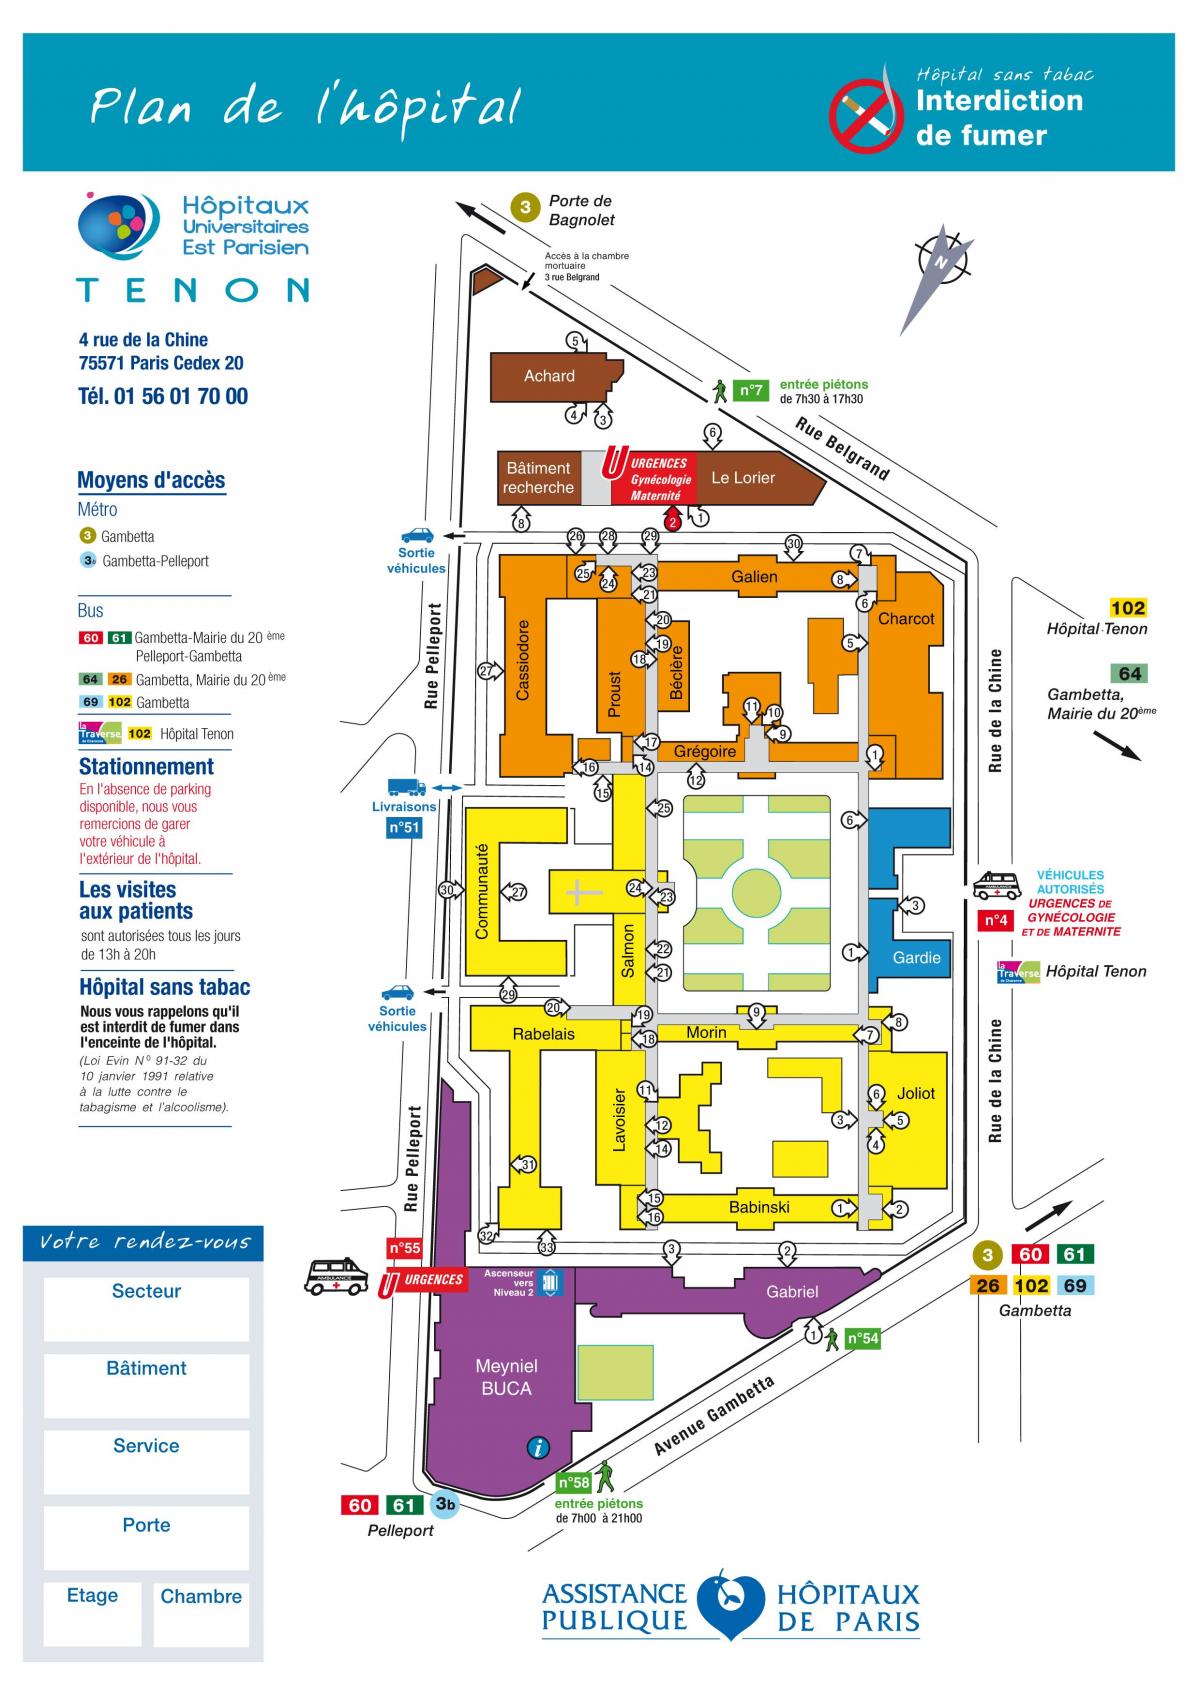 La mappa ospedale Tenon